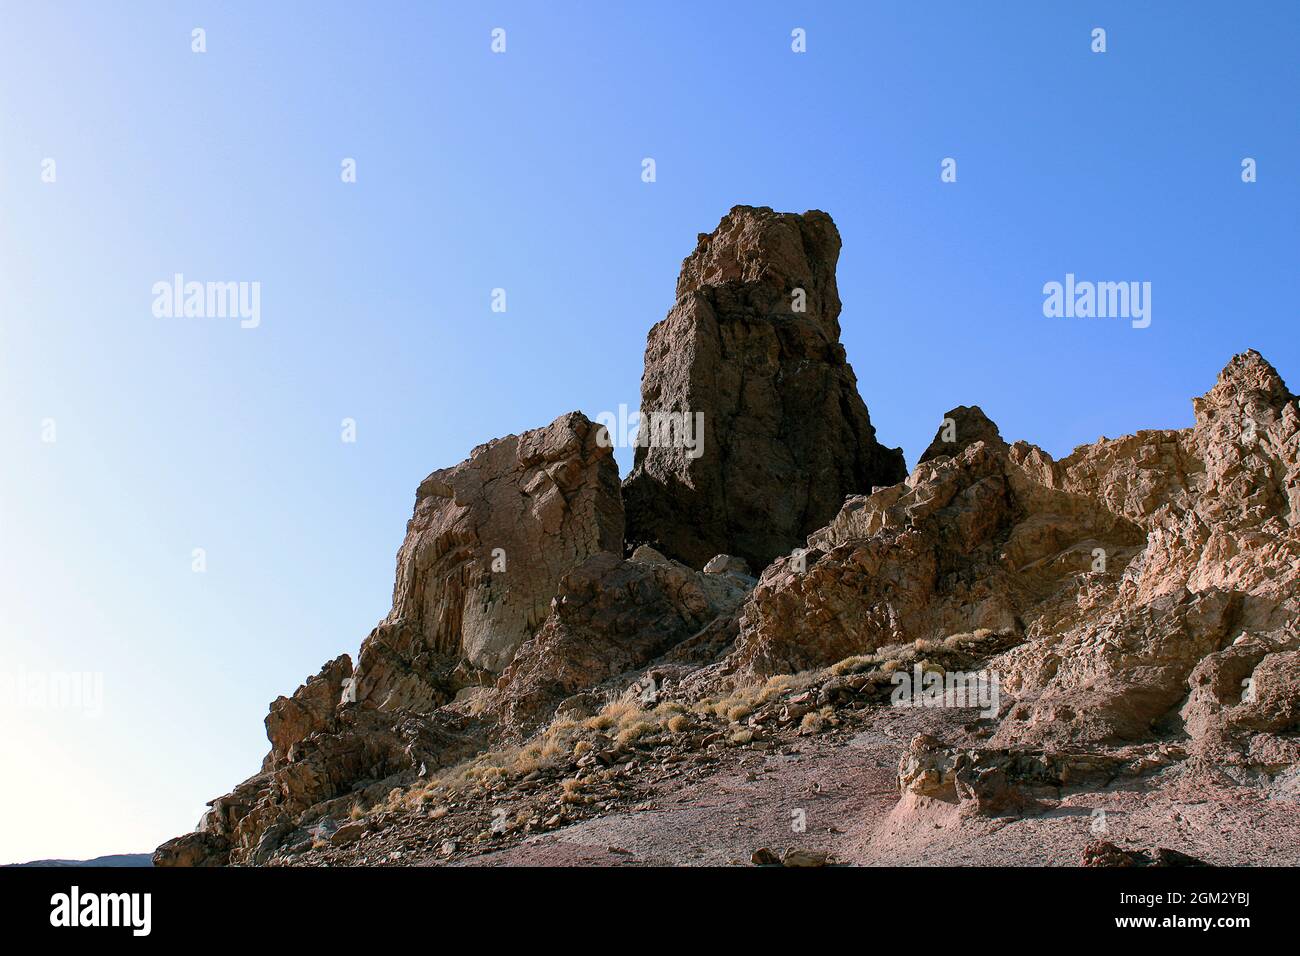 Vista de Montaña rocosa de El mirador de la Ruleta Stockfoto